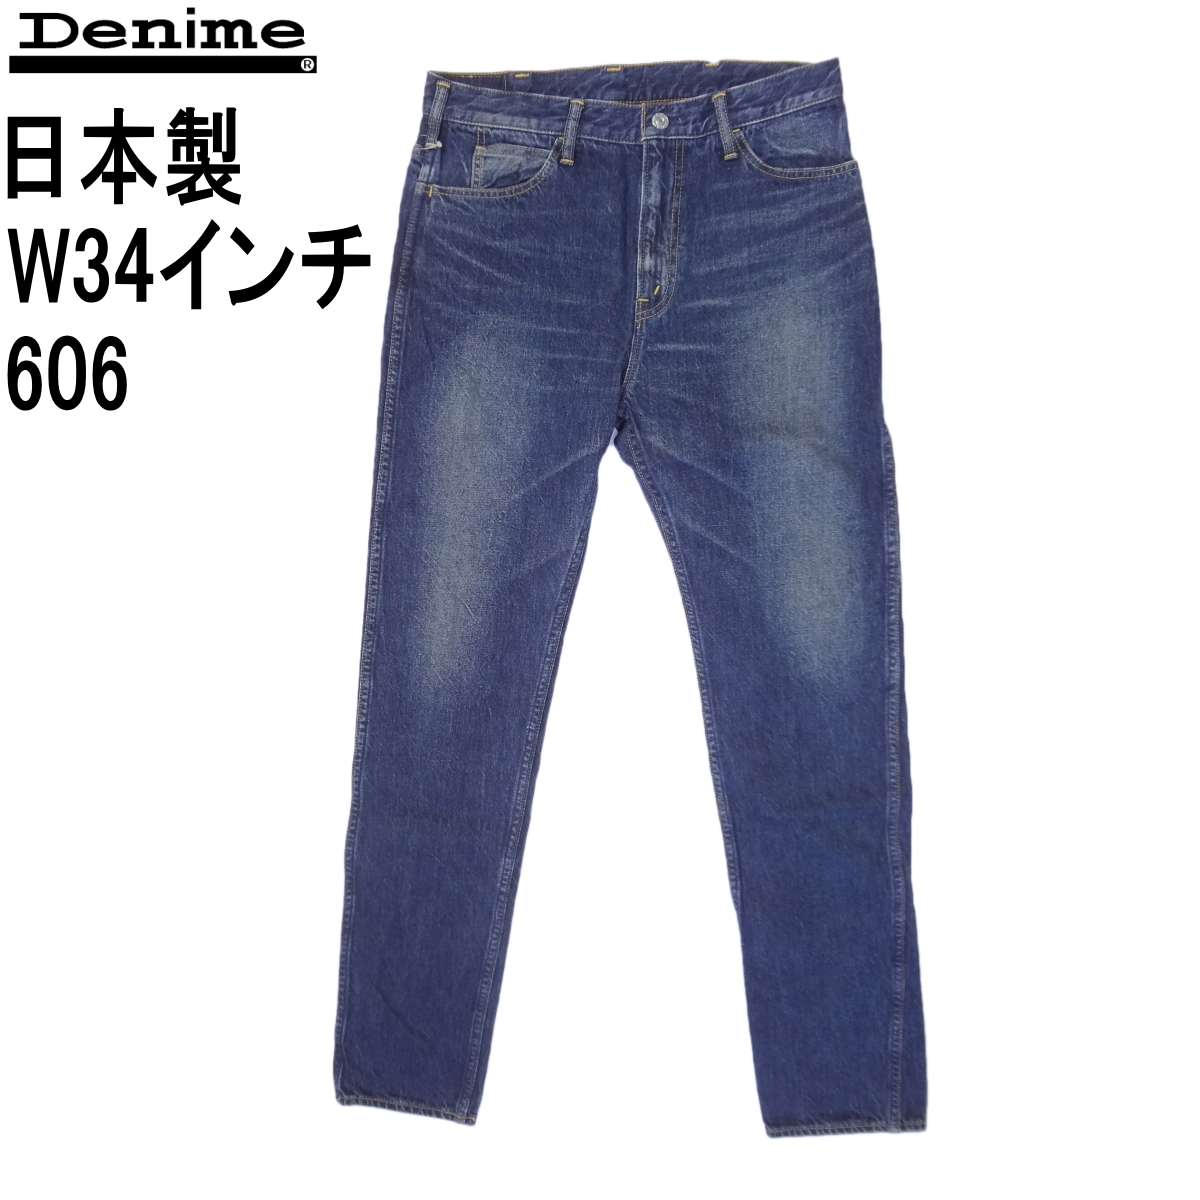 ドゥニーム 606type スリムデニム D16SS021 Denime 日本製 ジーンズ 裾上げ無料 W34インチ